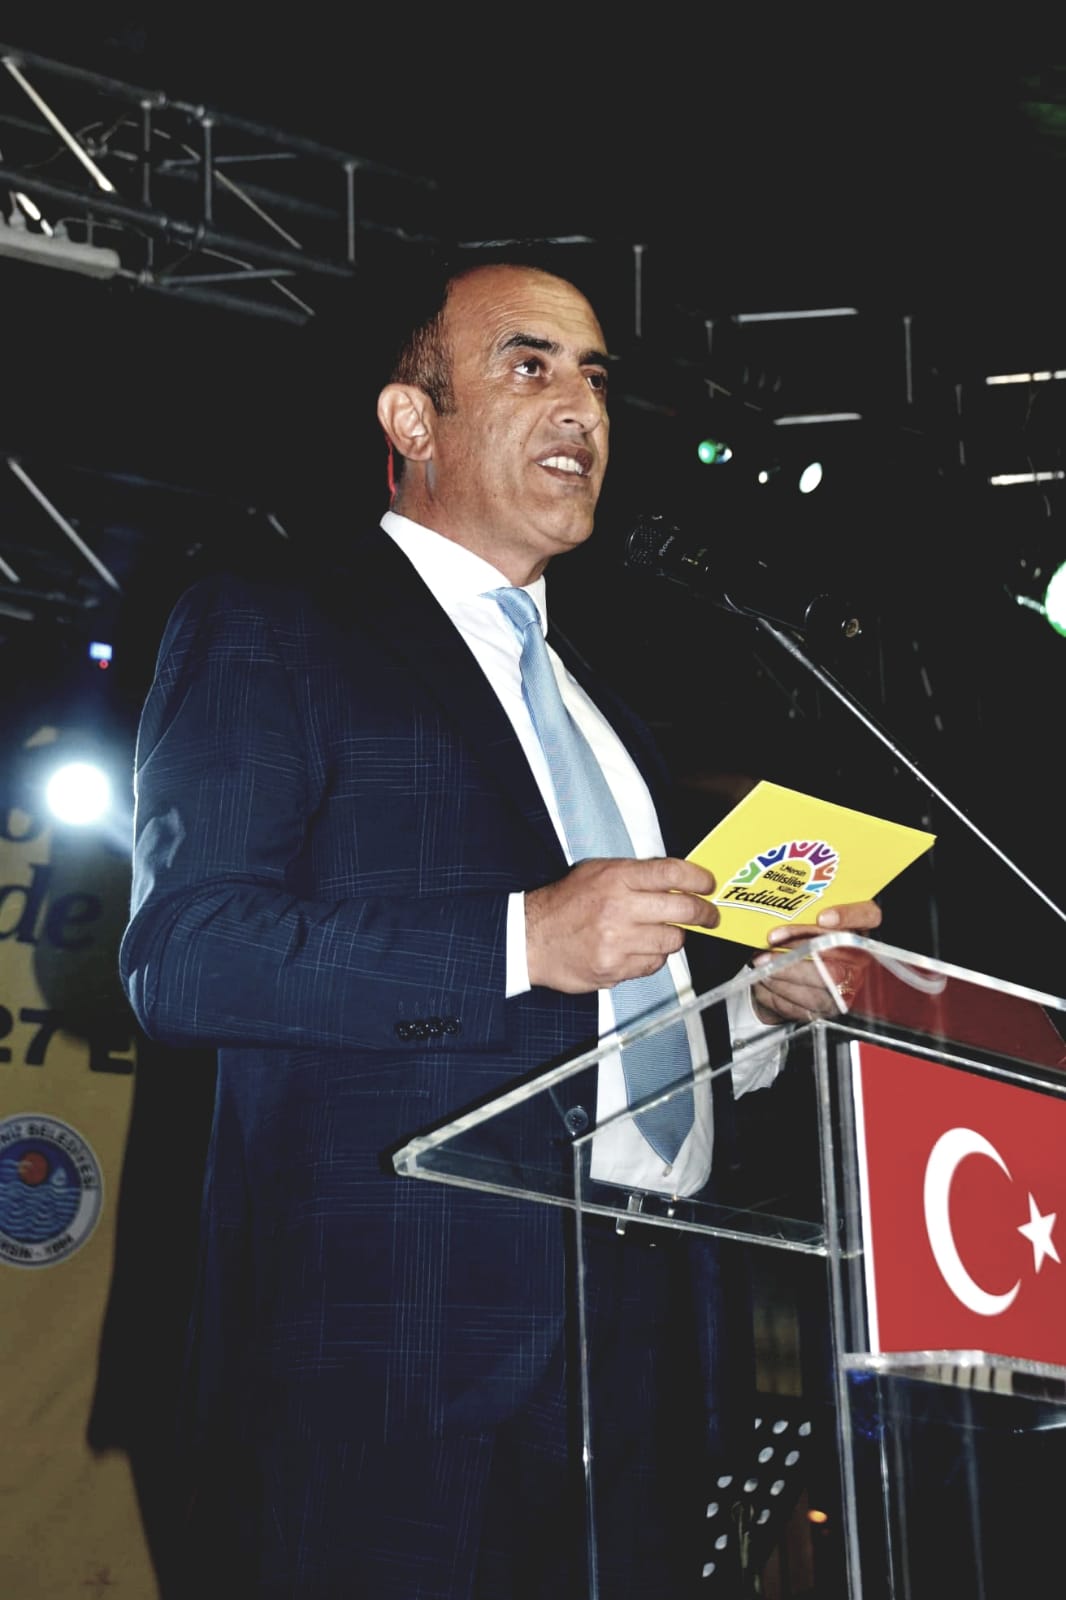 Mersin " Kardeşlik" temalı 1. Mersin Bitlisliler Kültür Festivali ile 81 ilin yöresel ürünleri Mersin'de buluşturdu. Cumhuriyet alanında gerçekleşen festival 27 ekim'e kadar açık kalacak.